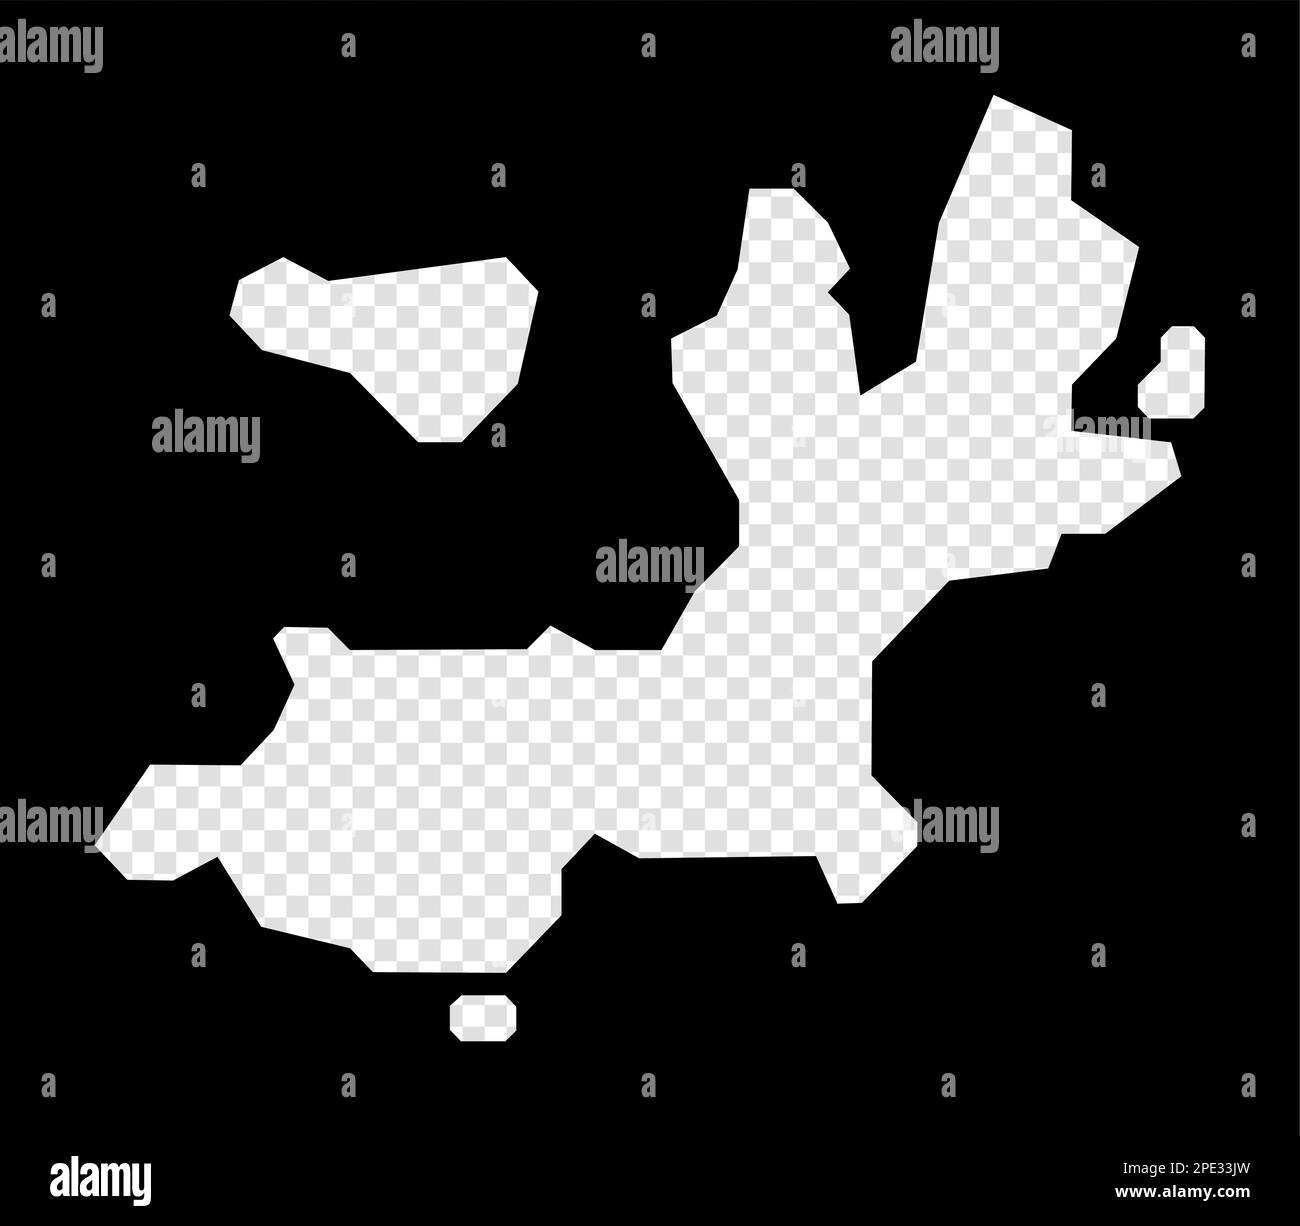 Carte stencil de l'île de Terre-de-Haut. Carte transparente simple et minimale de l'île de Terre-de-Haut. Rectangle noir avec forme de coupe de la zone. Élégant v Illustration de Vecteur